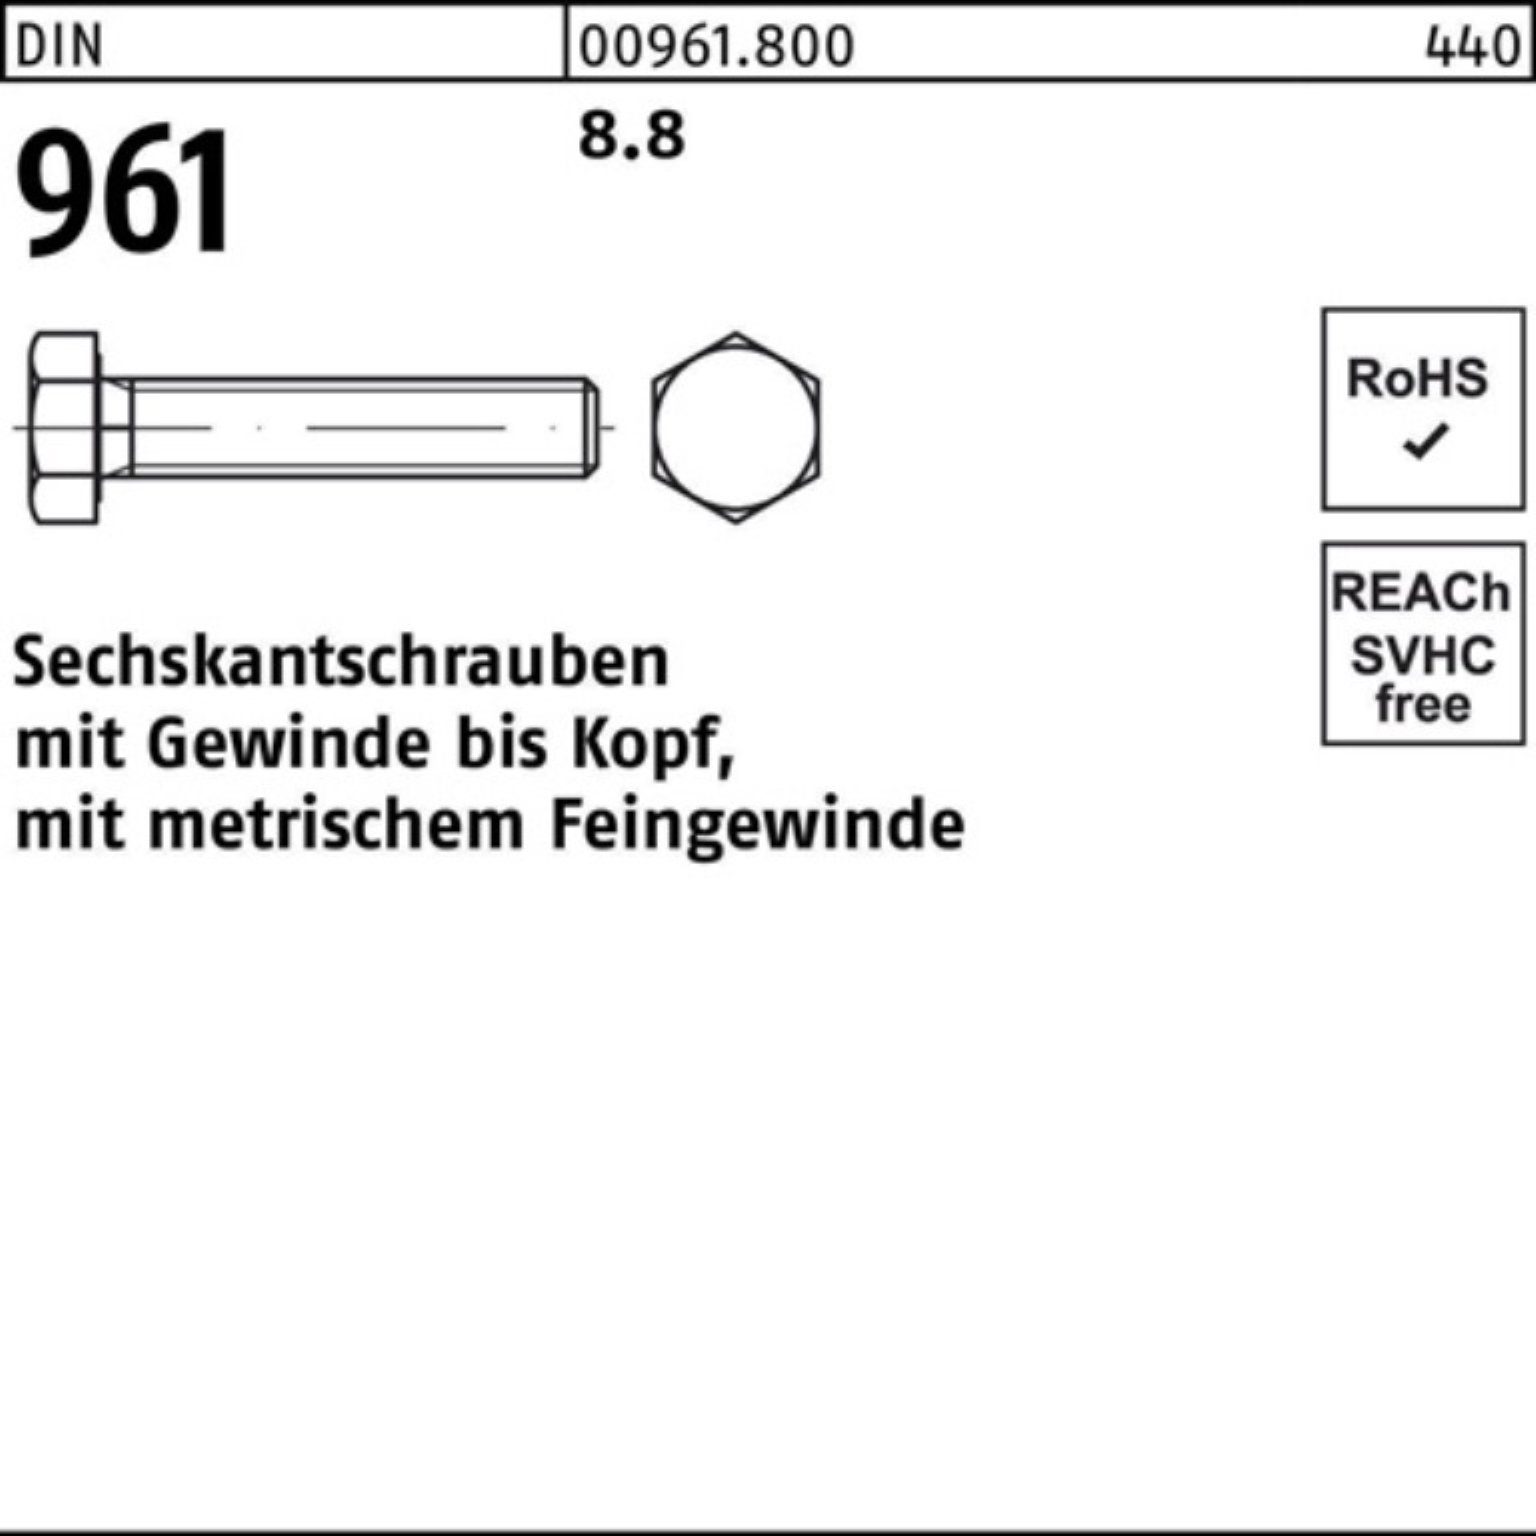 Reyher Sechskantschraube 100er Pack Sechskantschraube 961 DIN 1 DIN 8.8 VG 961 M30x2x110 Stück